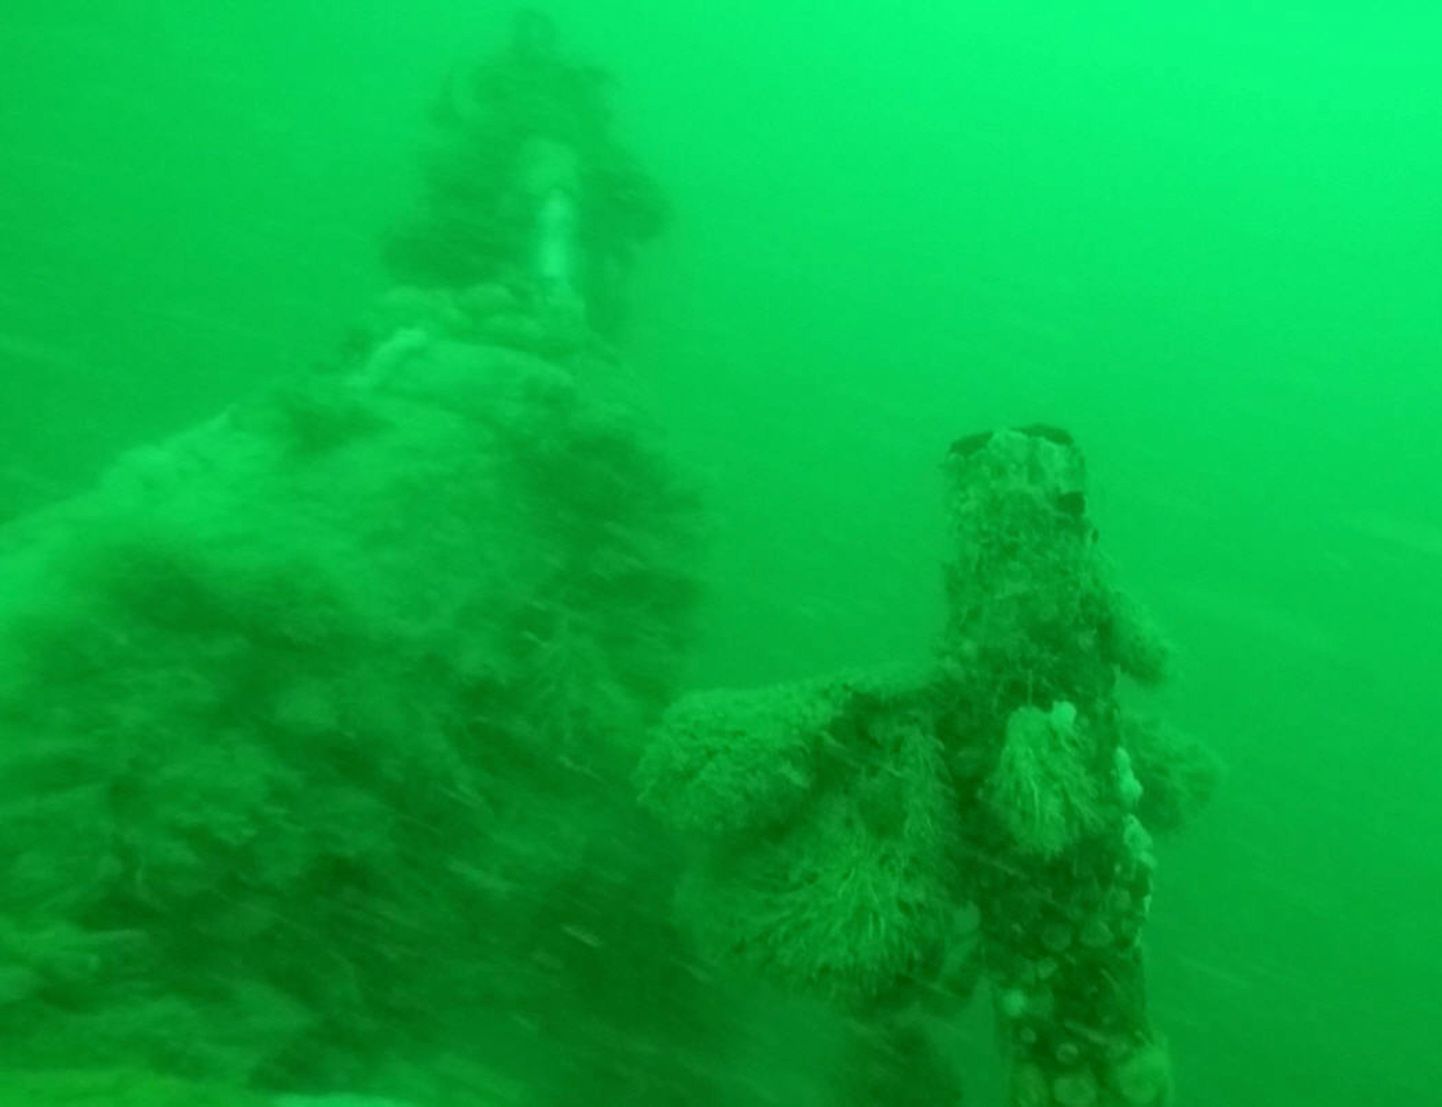 Подлодка находится на глубине около 30 метров. Ее точное местоположение не обнародуется, чтобы туда не приплывали любители, которые могут повредить находку.